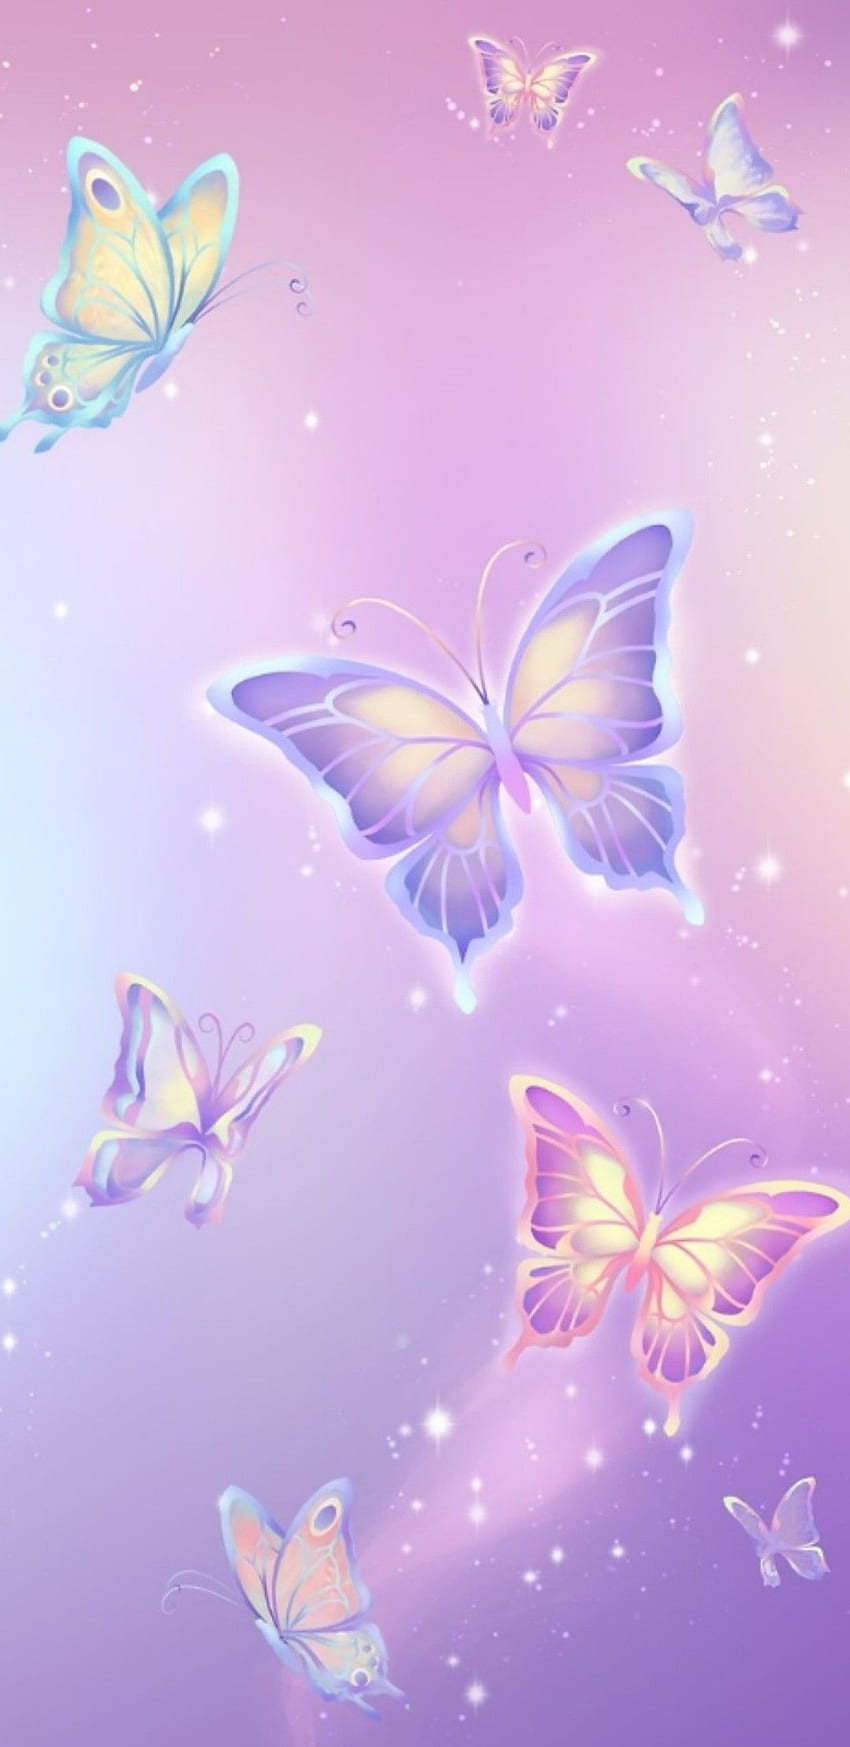 Pastel Butterfly Wallpaper  JPG  Templatenet